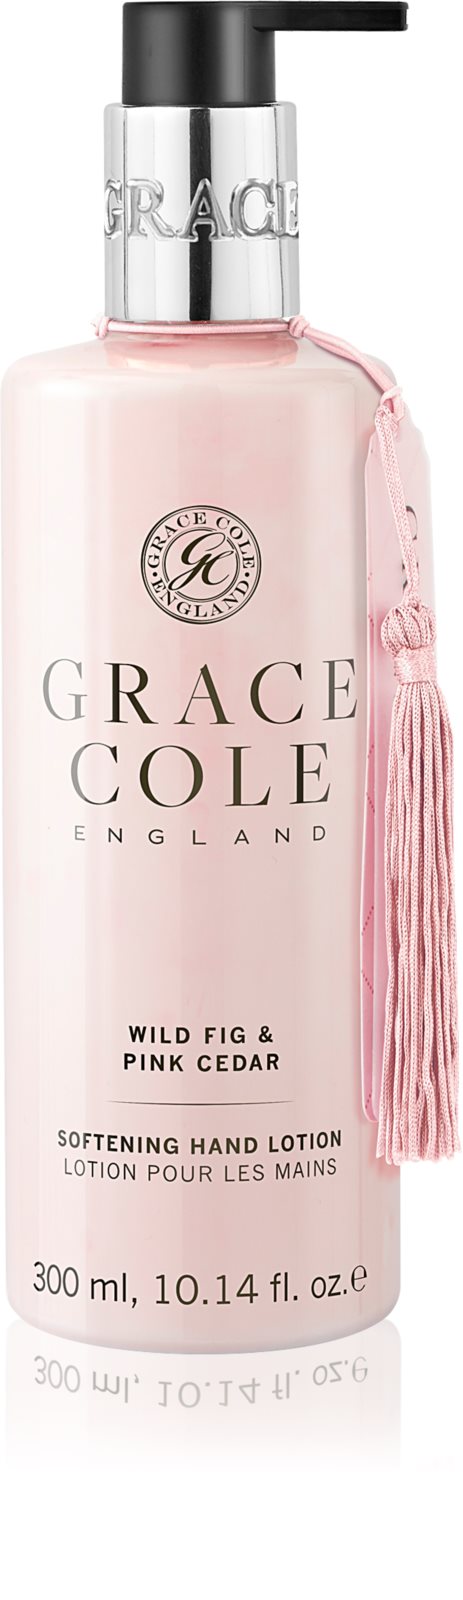 GRACE COLE: Wild Fig & Pink Cedar